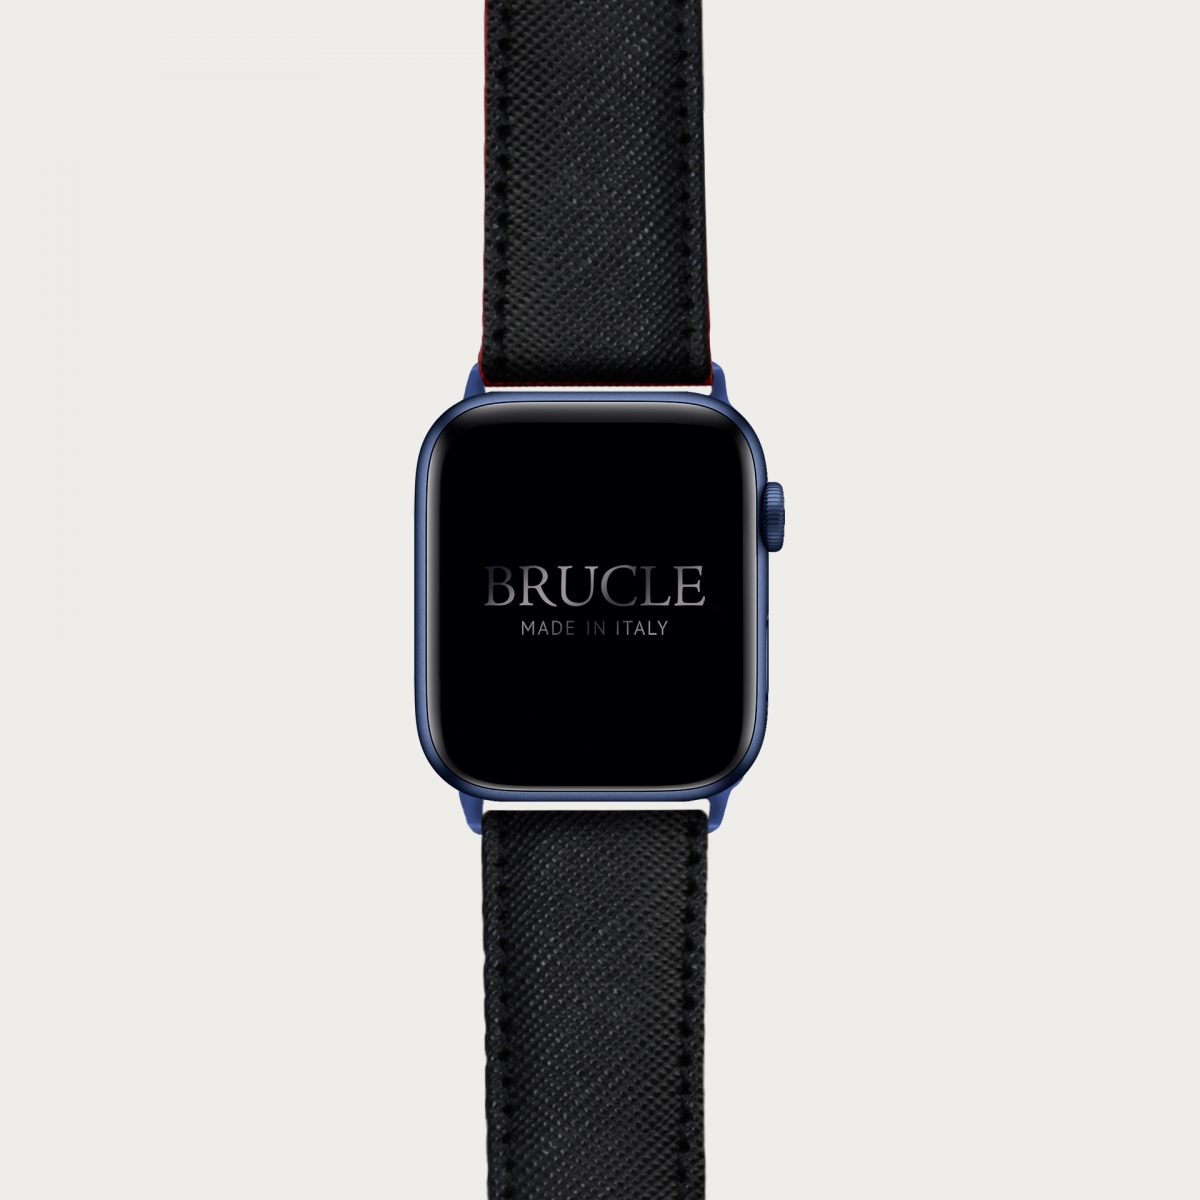 Correa de reloj compatible con Apple Watch / Samsung smartwatch, negro Saffiano